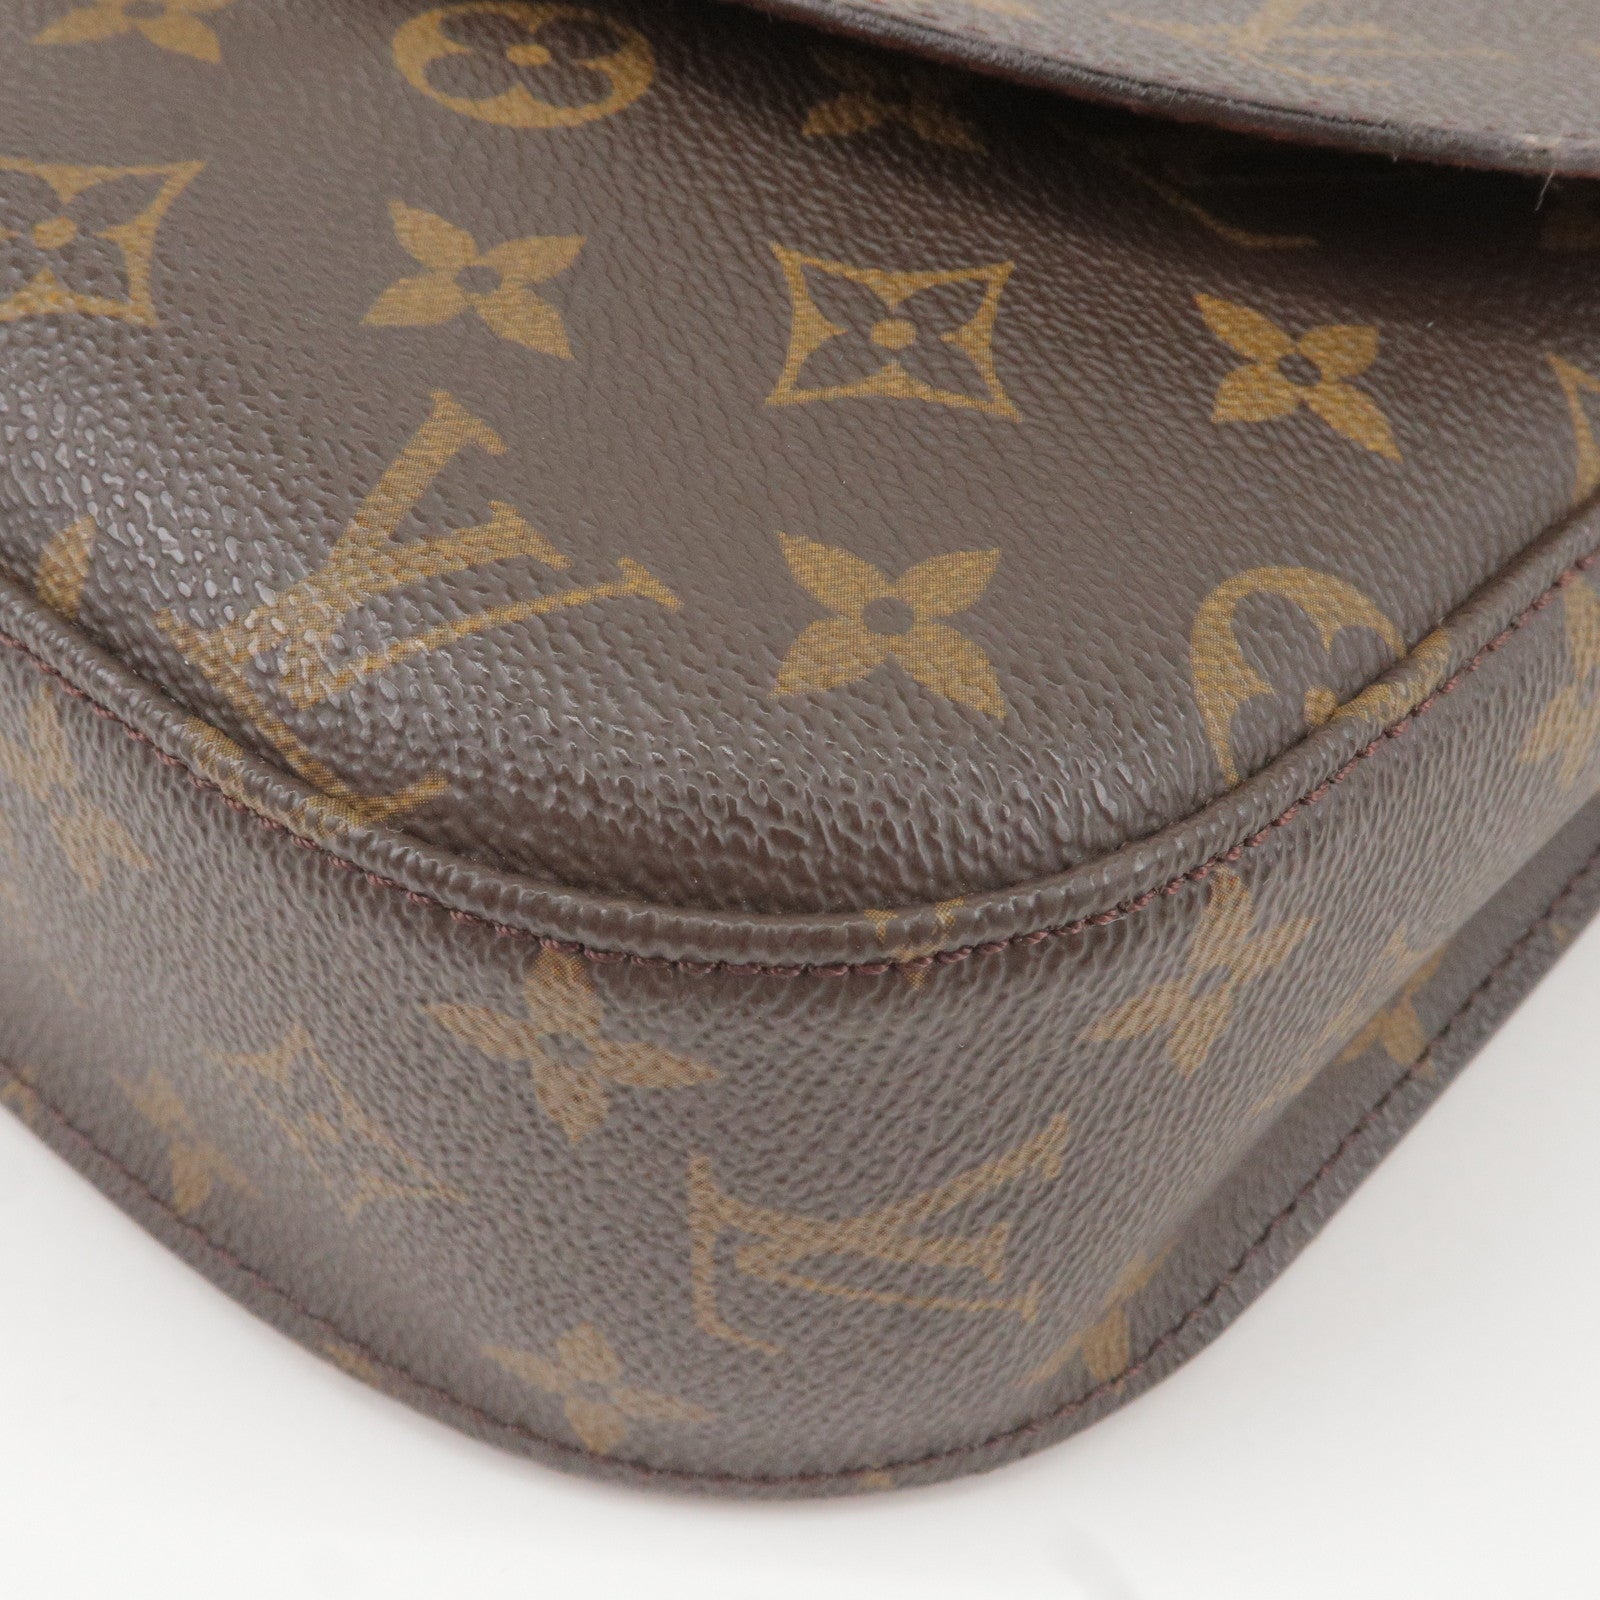 Pre-owned Louis Vuitton 2020 Monogram Tapestry Grand Sac Handbag